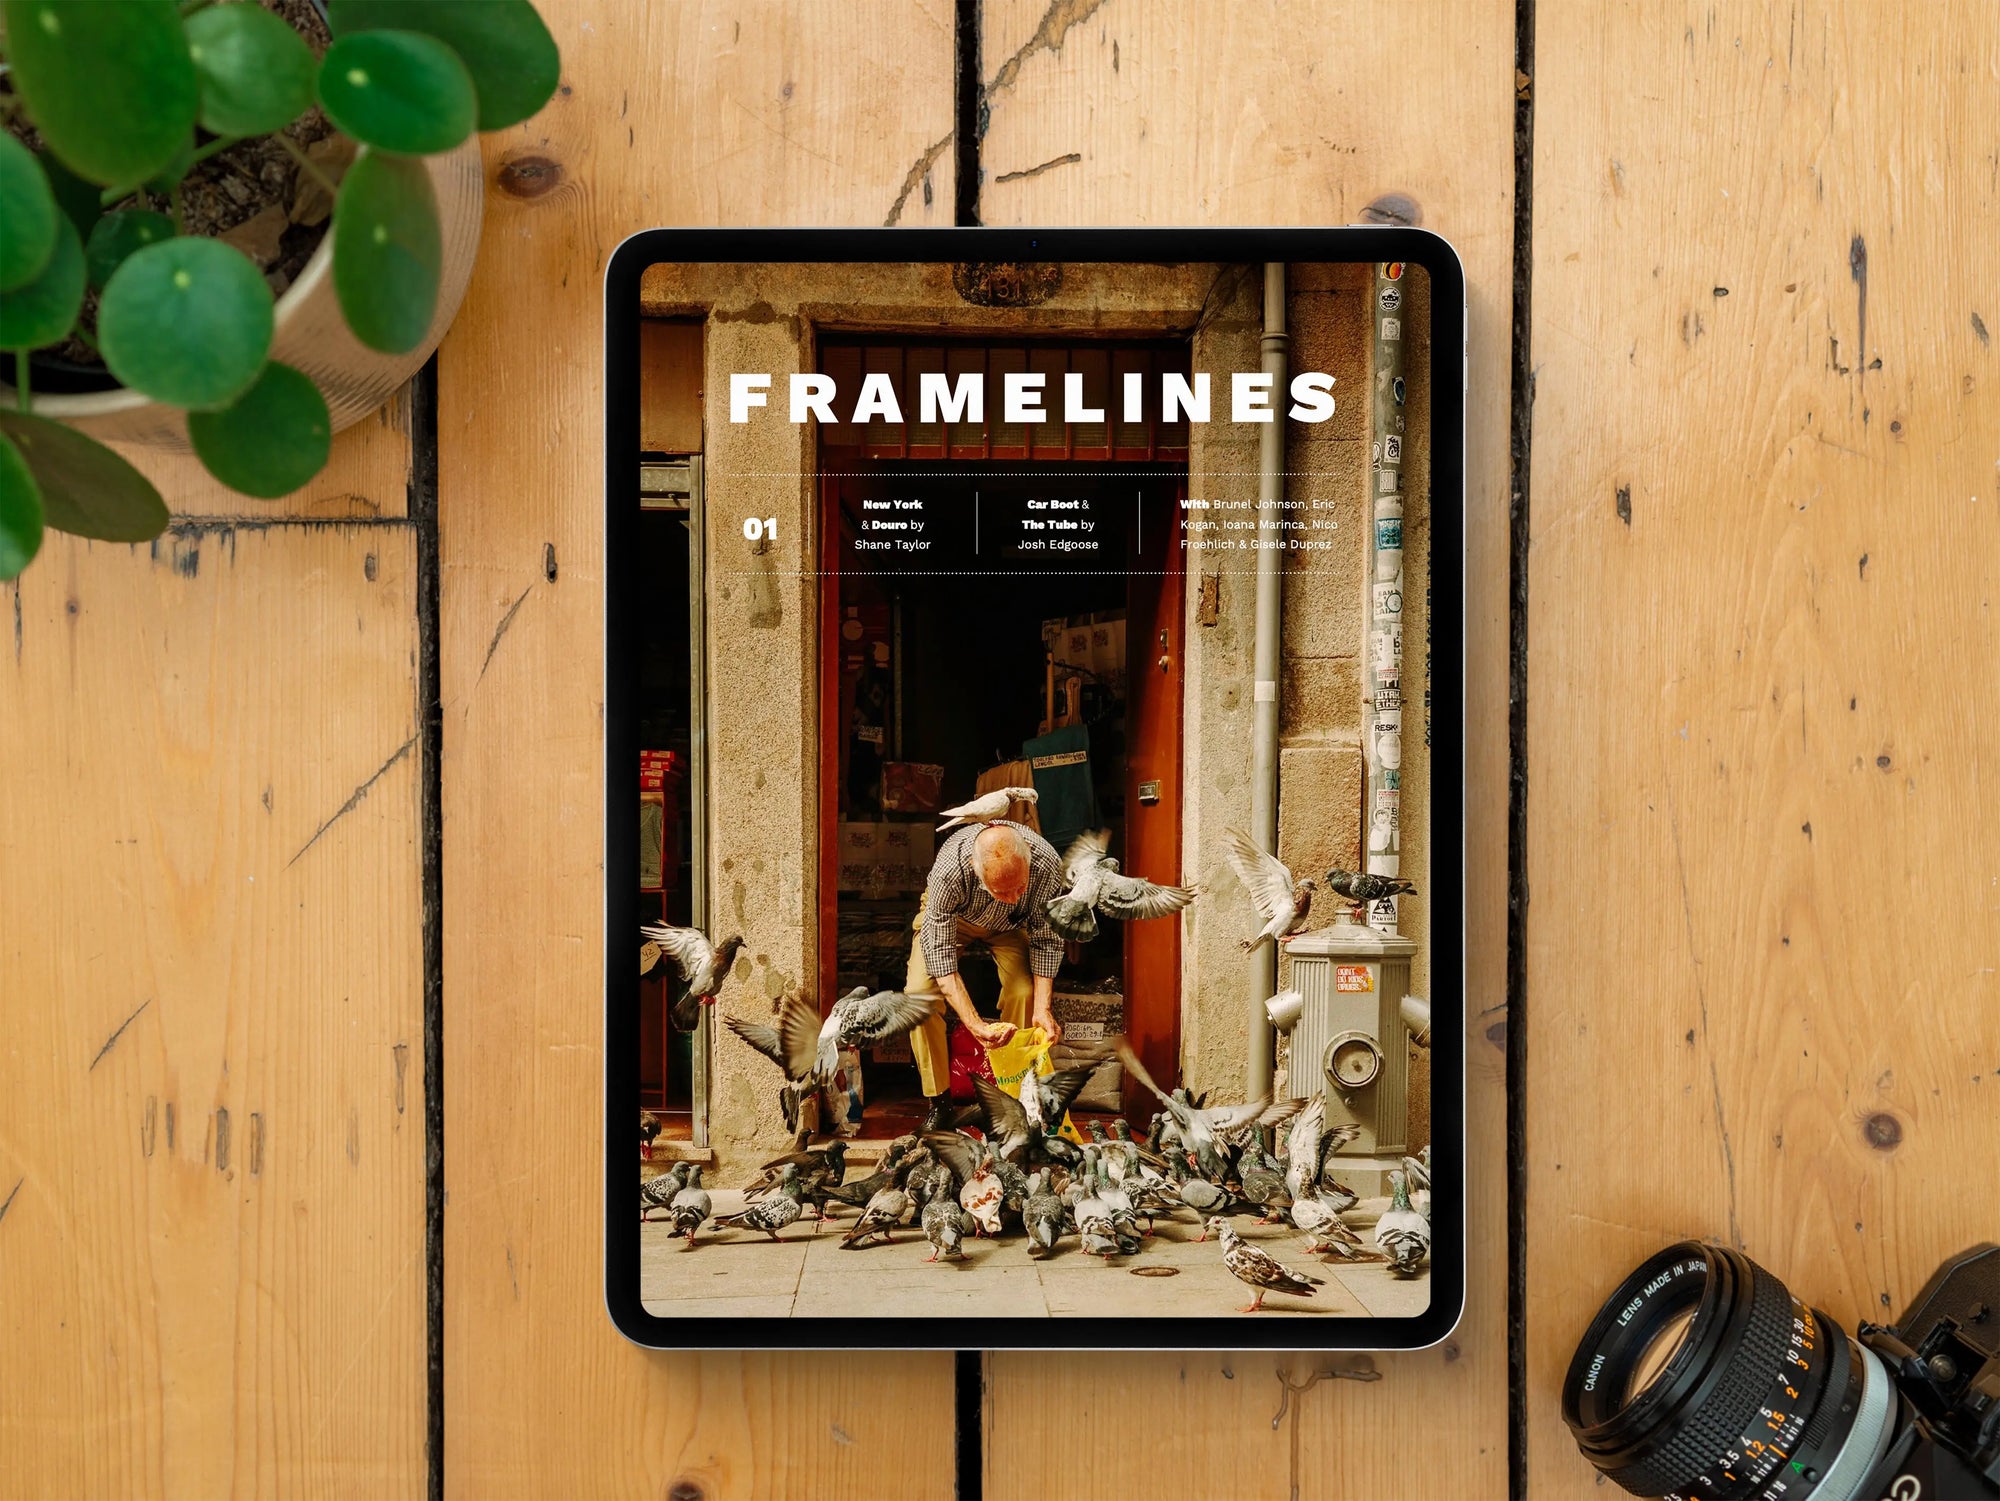 Framelines 01 (Digital Edition) with Nico Froehlich, Gisele Duprez, Eric Kogan, Brunel Johnson and Ioana Marinca